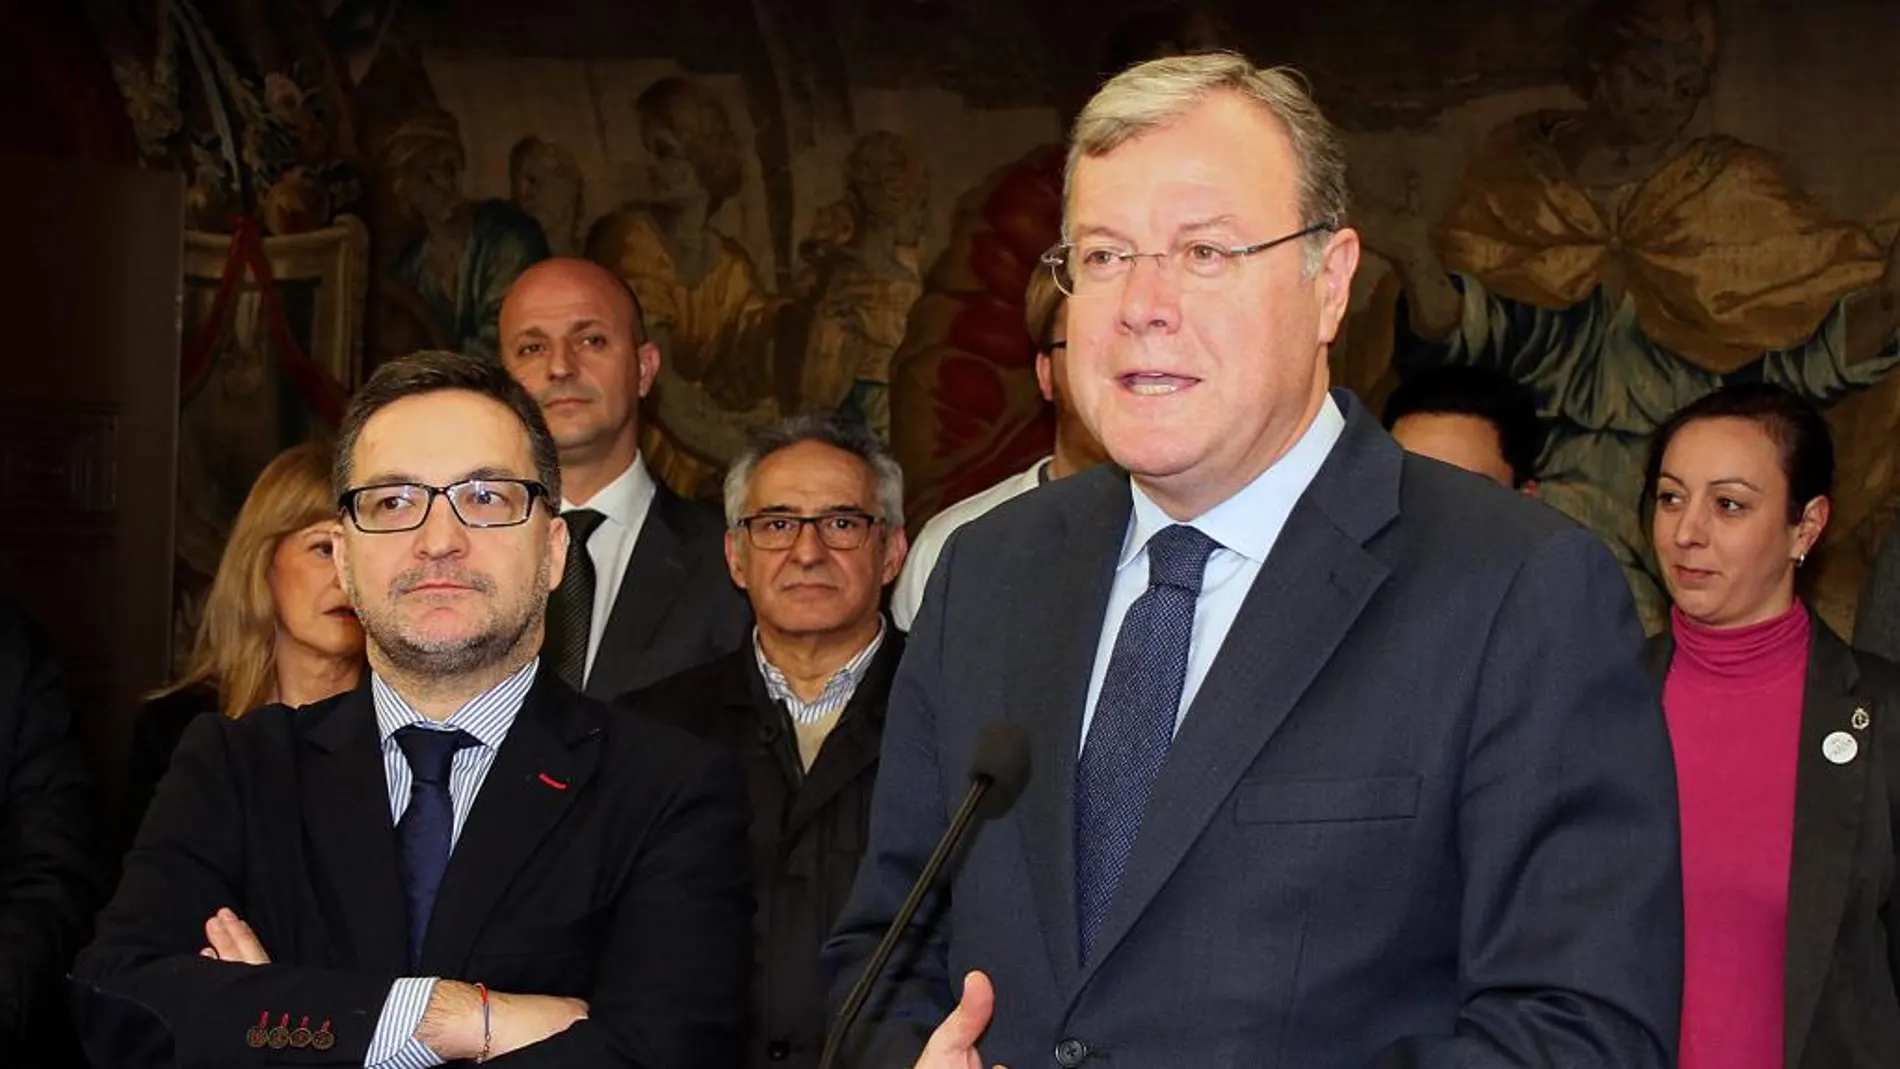 La iniciativa fue presentada por el alcalde, Antonio Silván y por el presidente de la Junta Mayor, Miguel Ángel Fernández